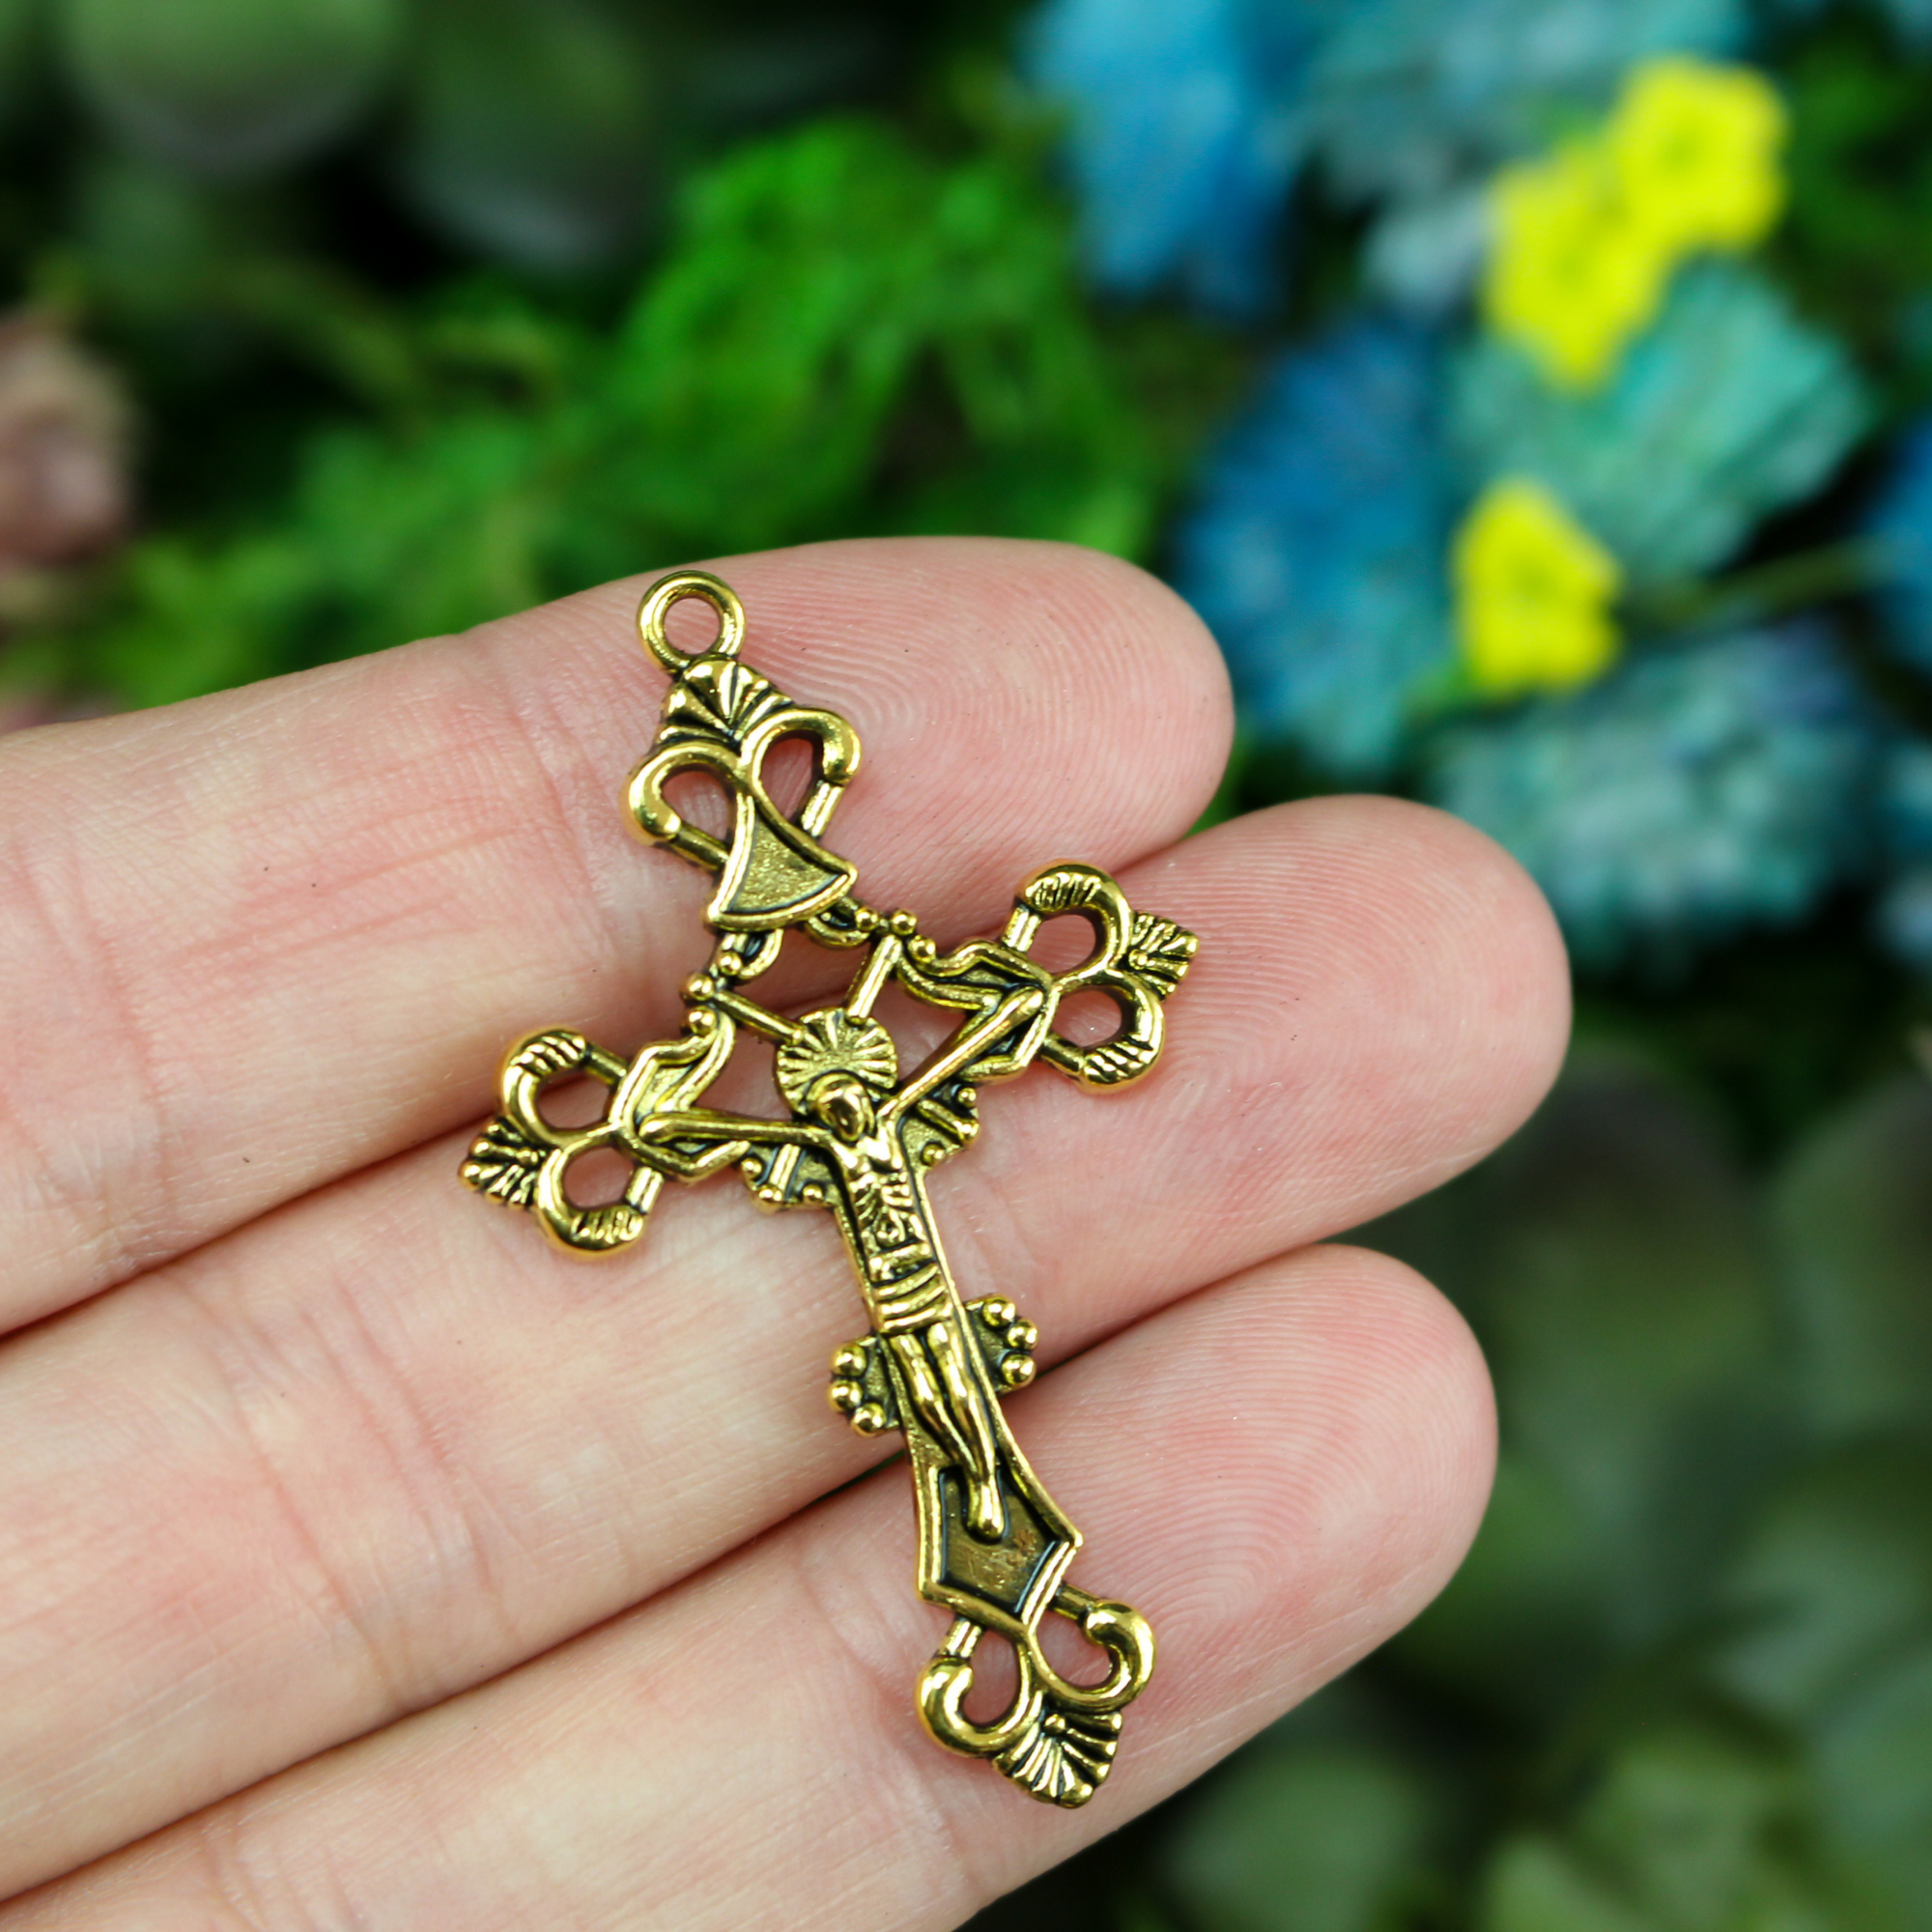 ornate gold tone crucifix cross pendant